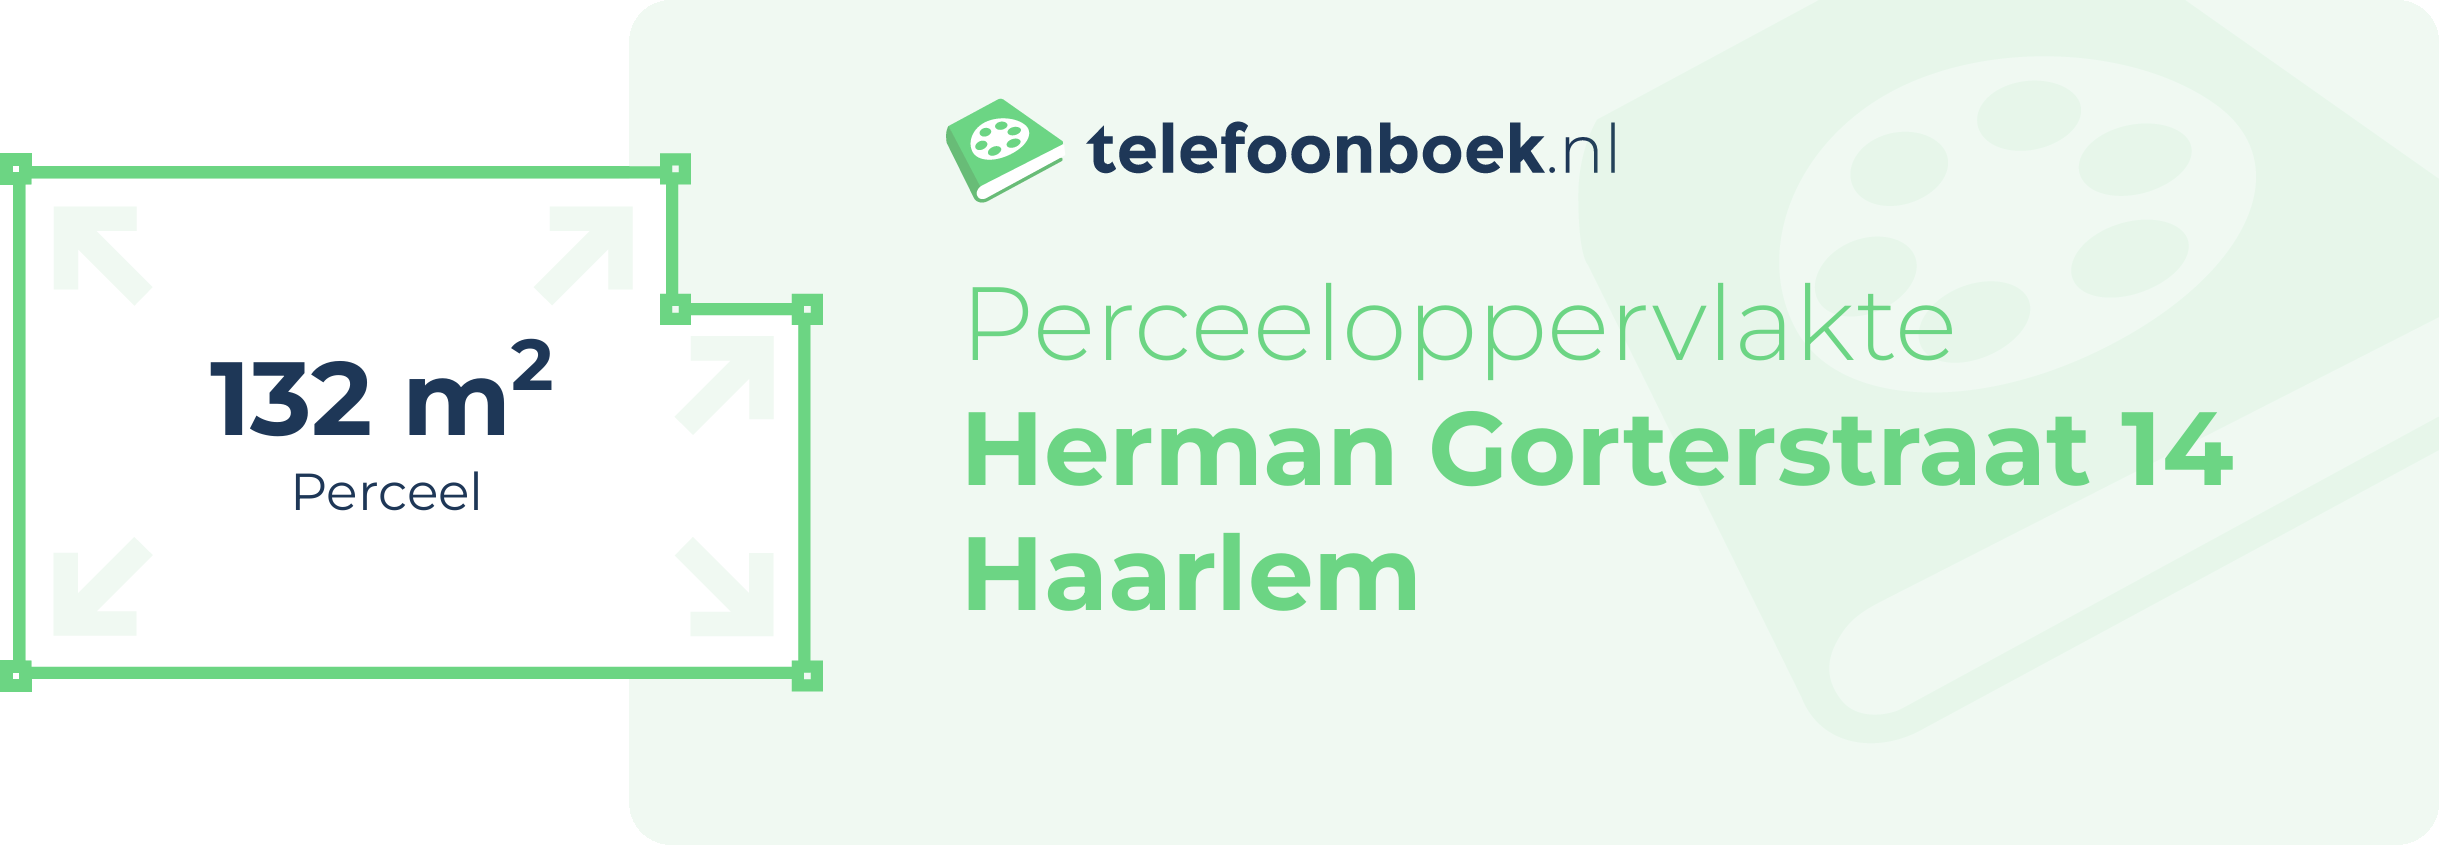 Perceeloppervlakte Herman Gorterstraat 14 Haarlem